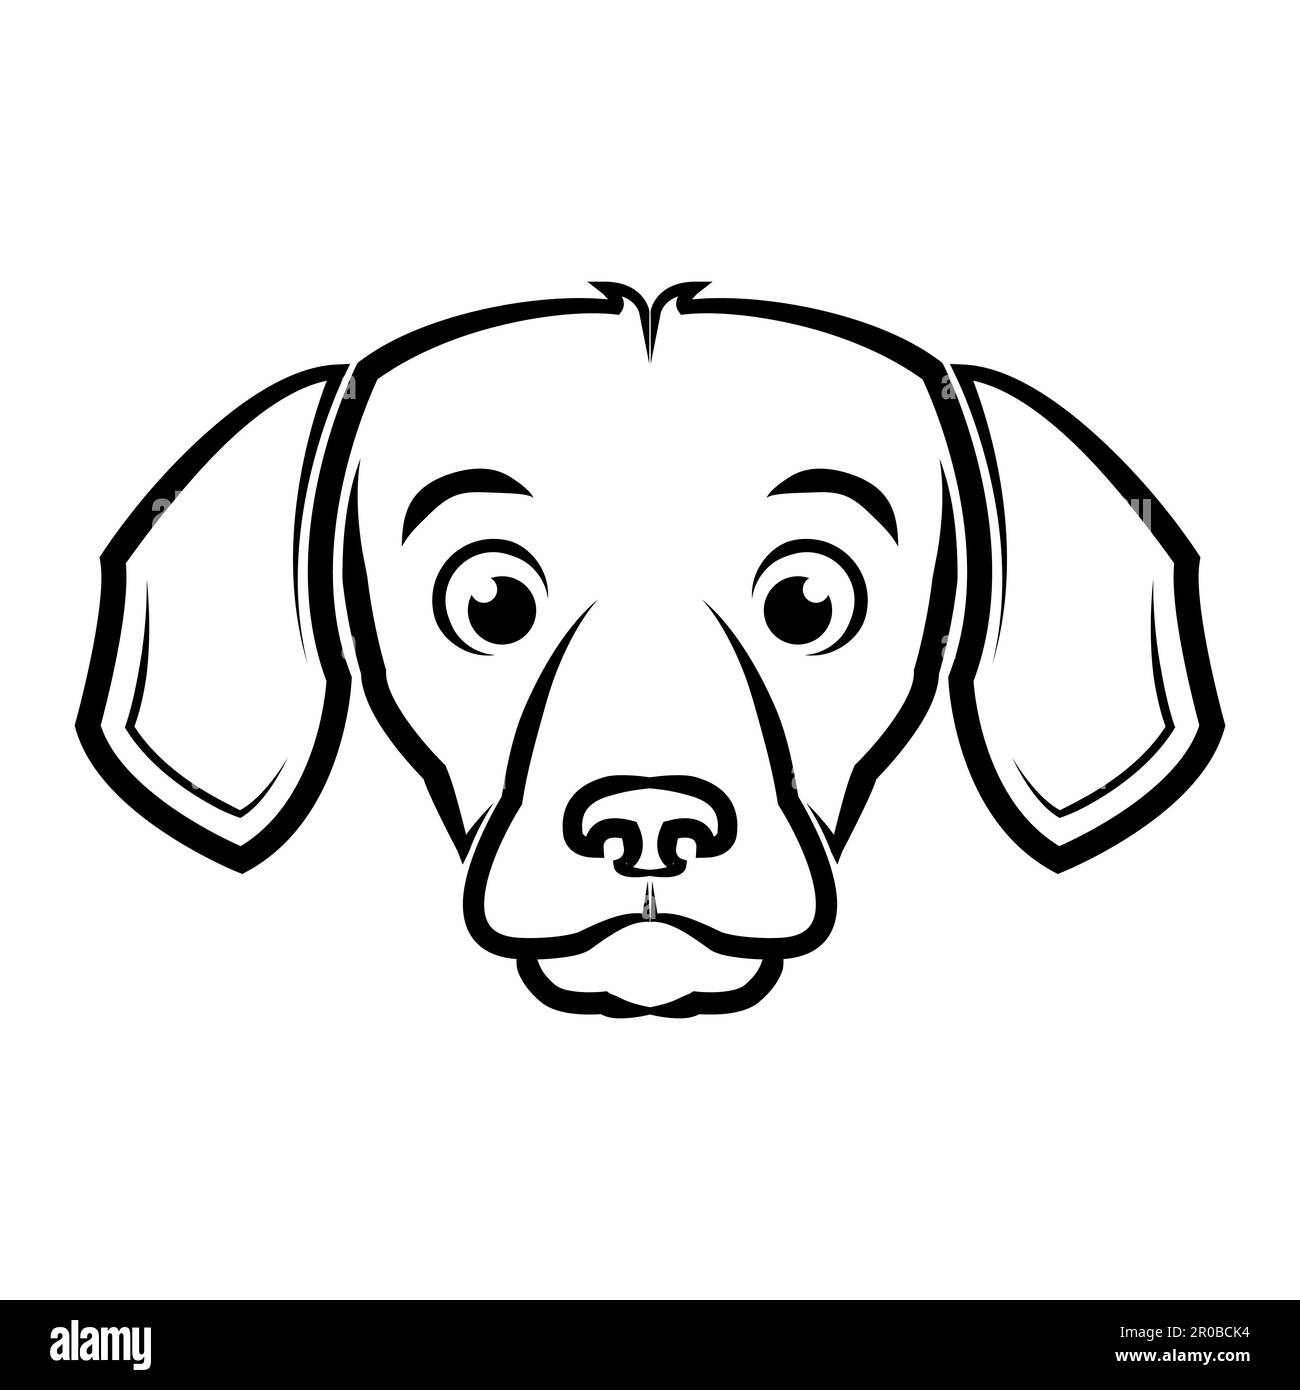 Dessin au trait noir et blanc de l'avant de la tête de chien beagle bonne utilisation pour symbole mascotte icône avatar tatouage T logo de chemise ou tout autre dessin Illustration de Vecteur